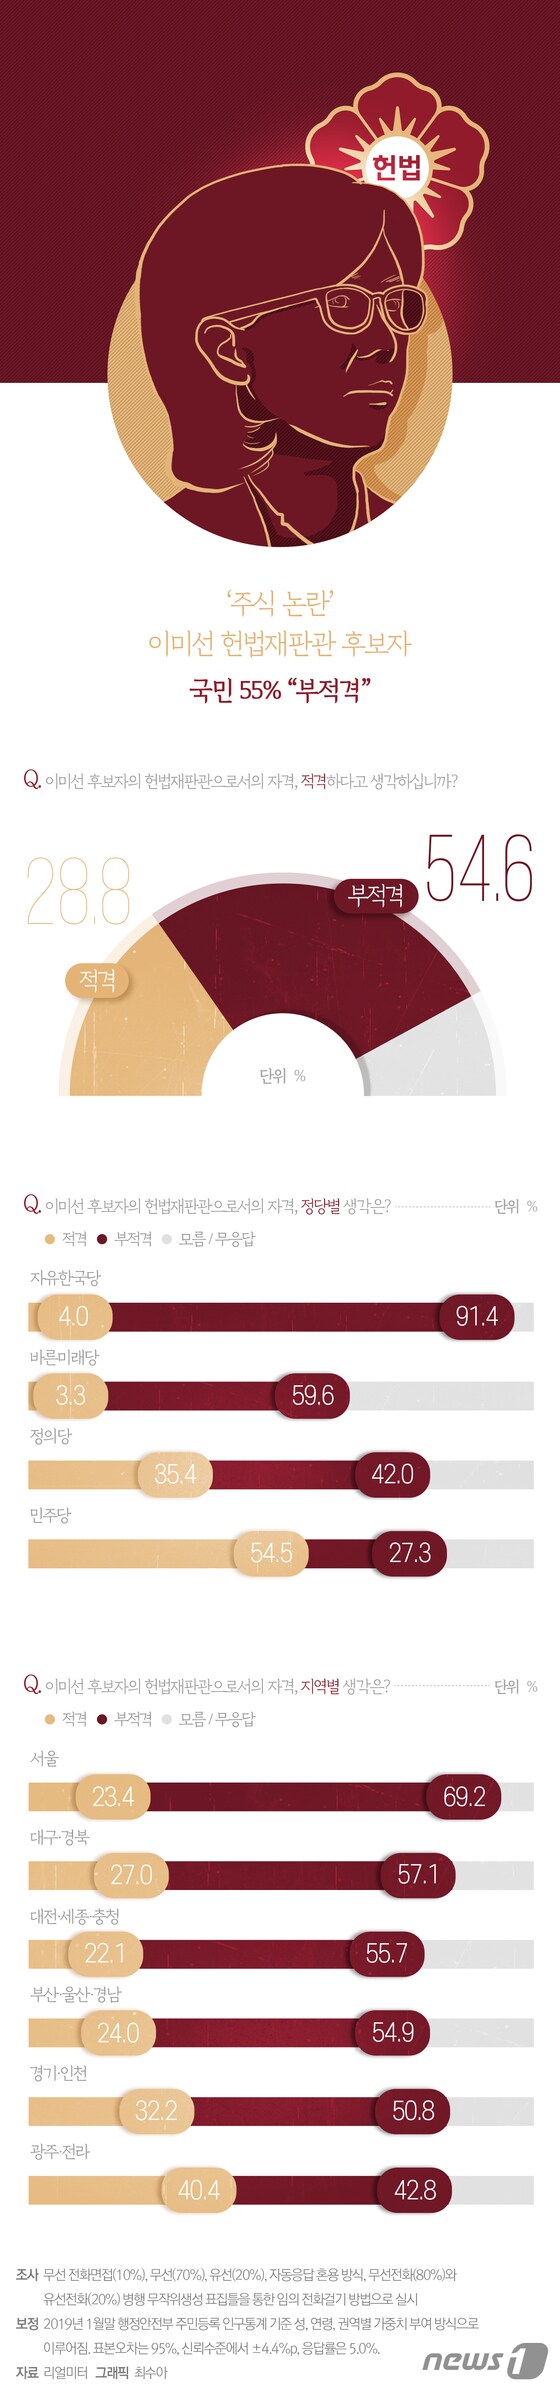 [그래픽뉴스] '주식 논란' 이미선 헌법재판관 후보자, 국민 55% 